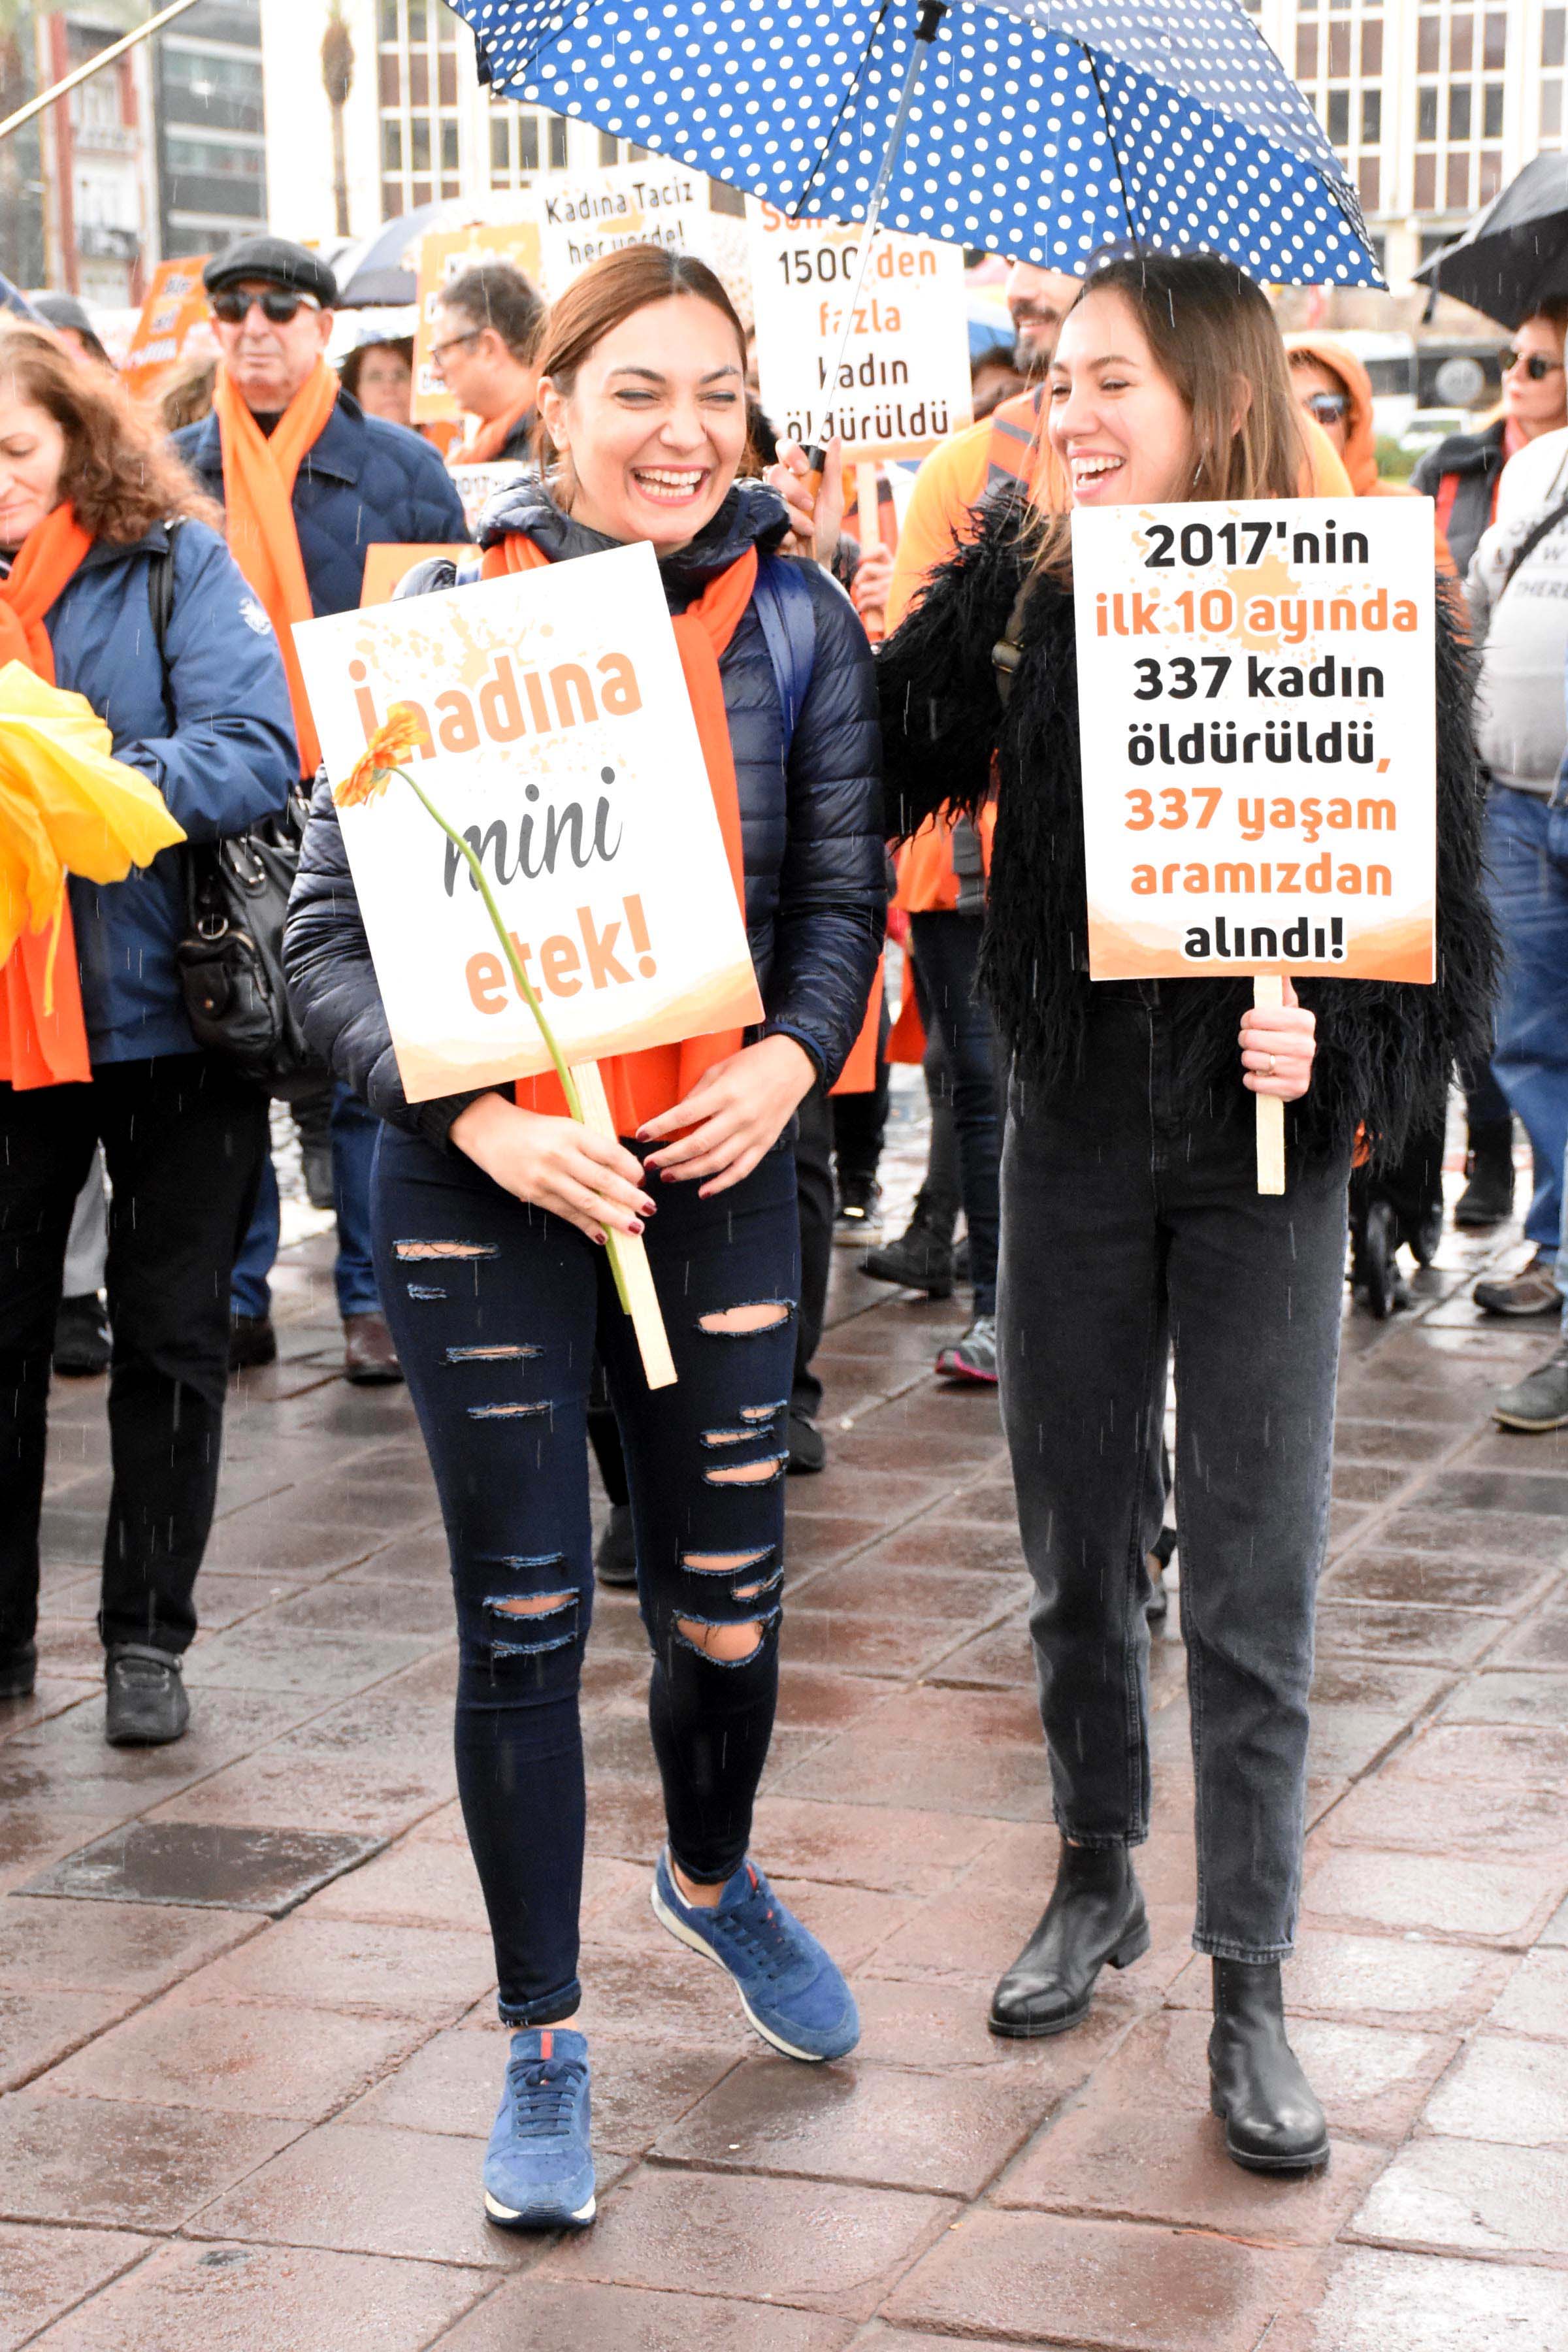 İzmir'de kadınlar kadına şiddeti protesto için yürüdü